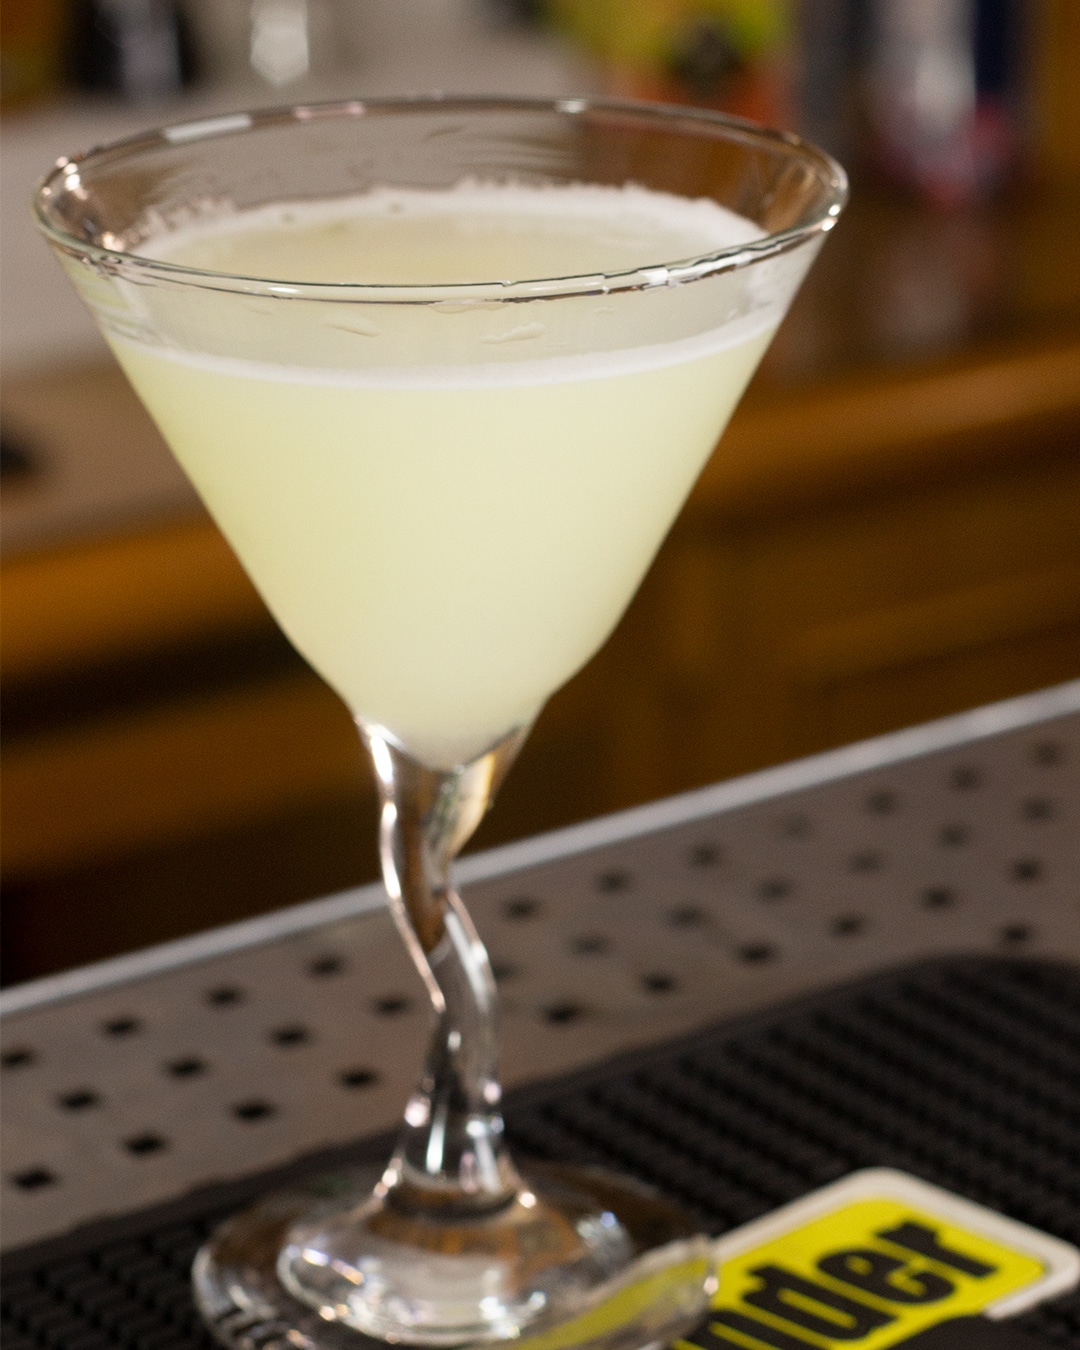 Martini de Abacaxi e Cardamomo - Drink incrível com vodka e um toque de cardamomo